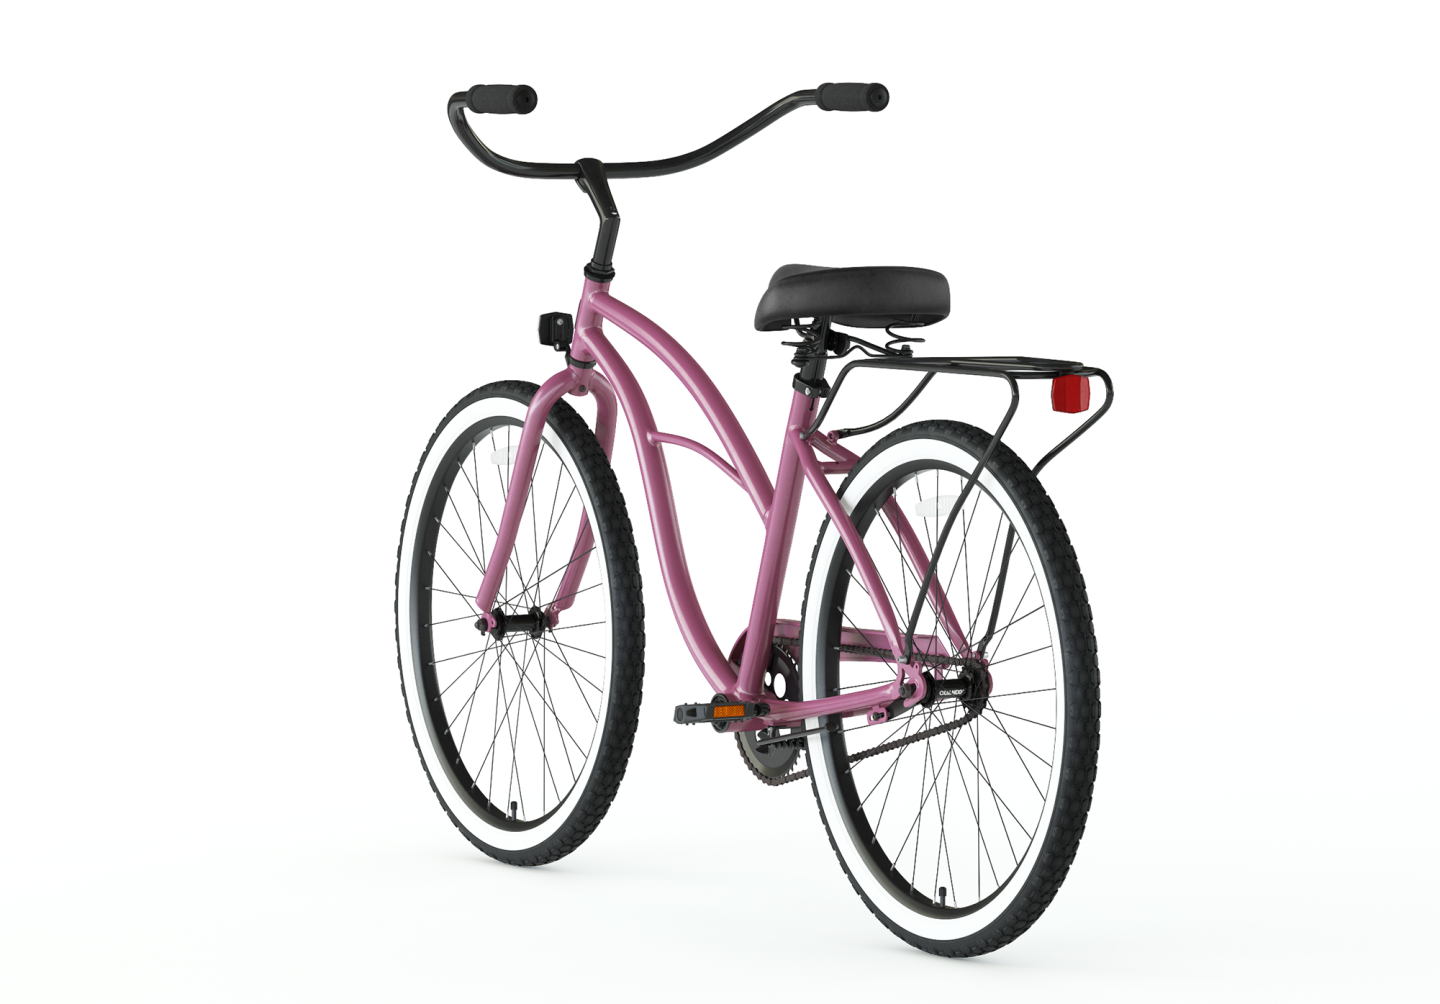 Sixthreezero Women's 26 Inch 21 Speed Cruiser Bicycle - Around the 